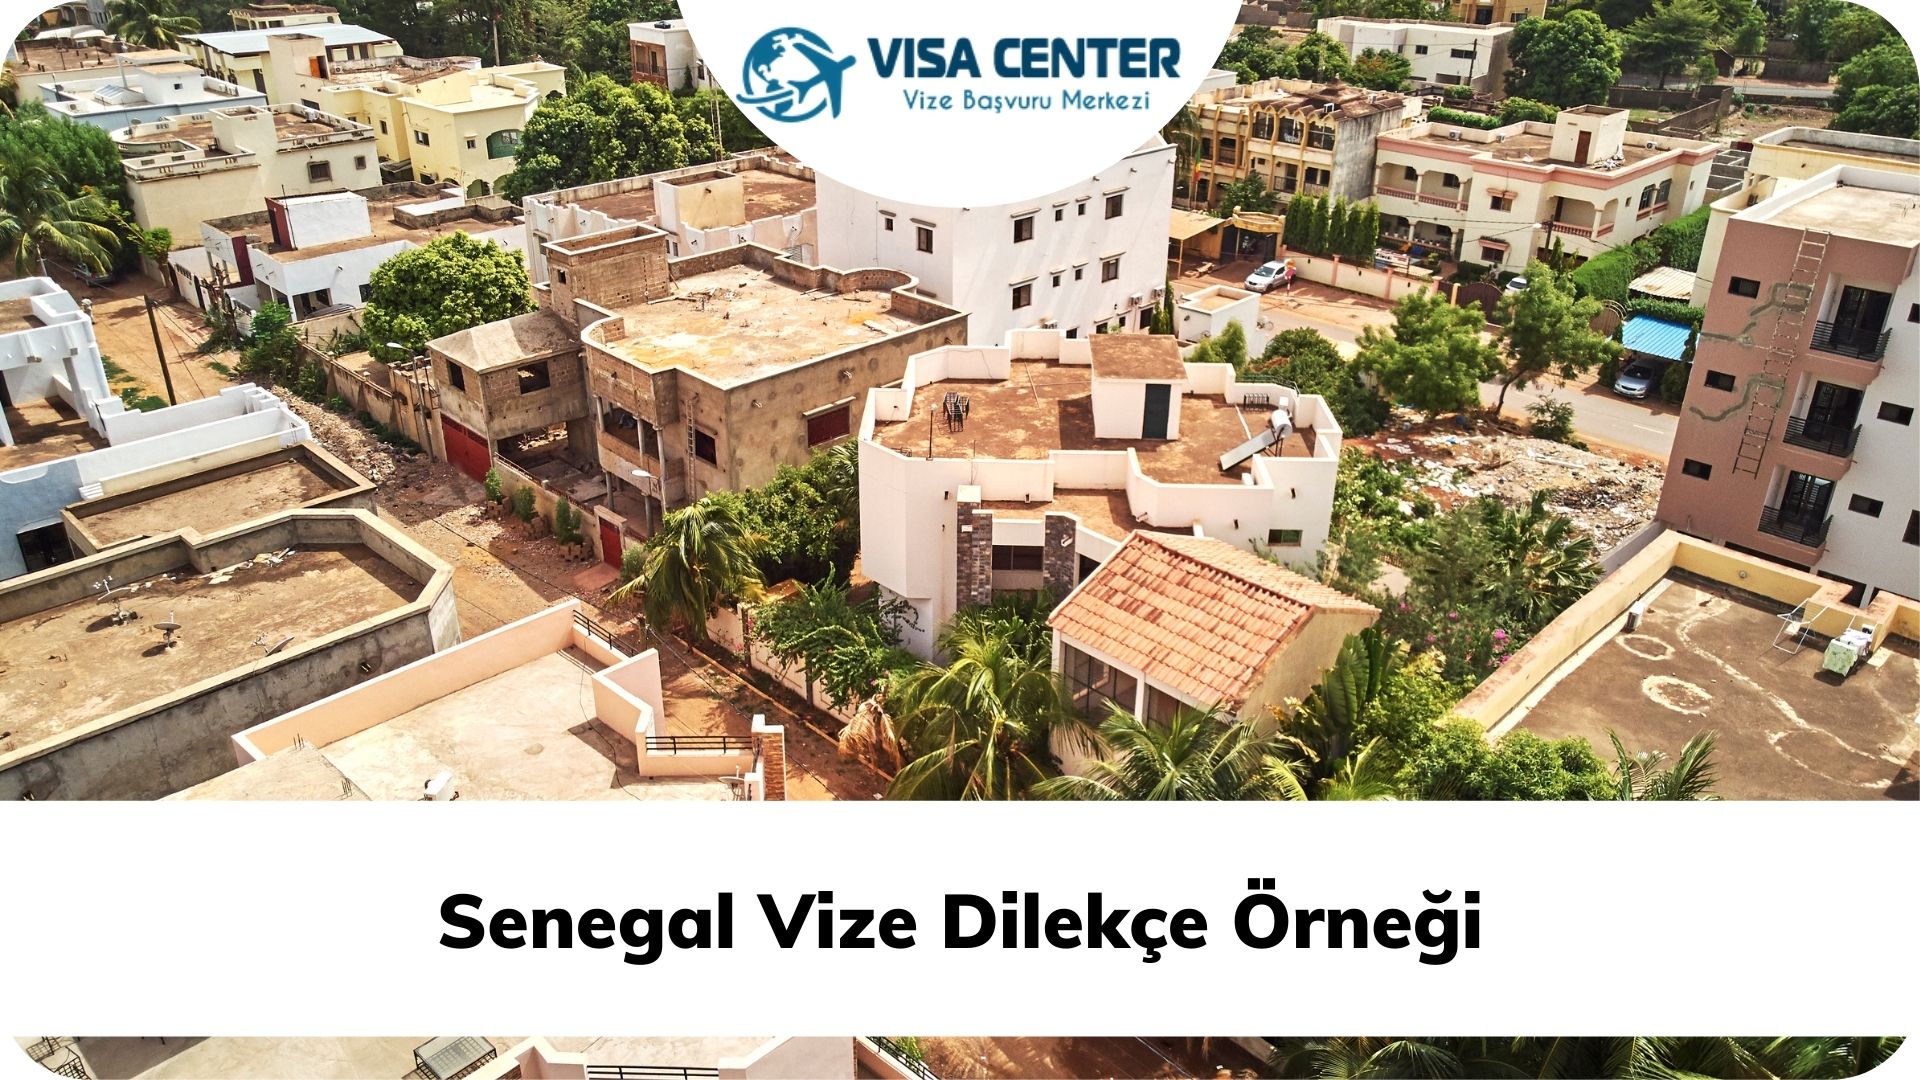 Senegal Vize Dilekçe Örneği